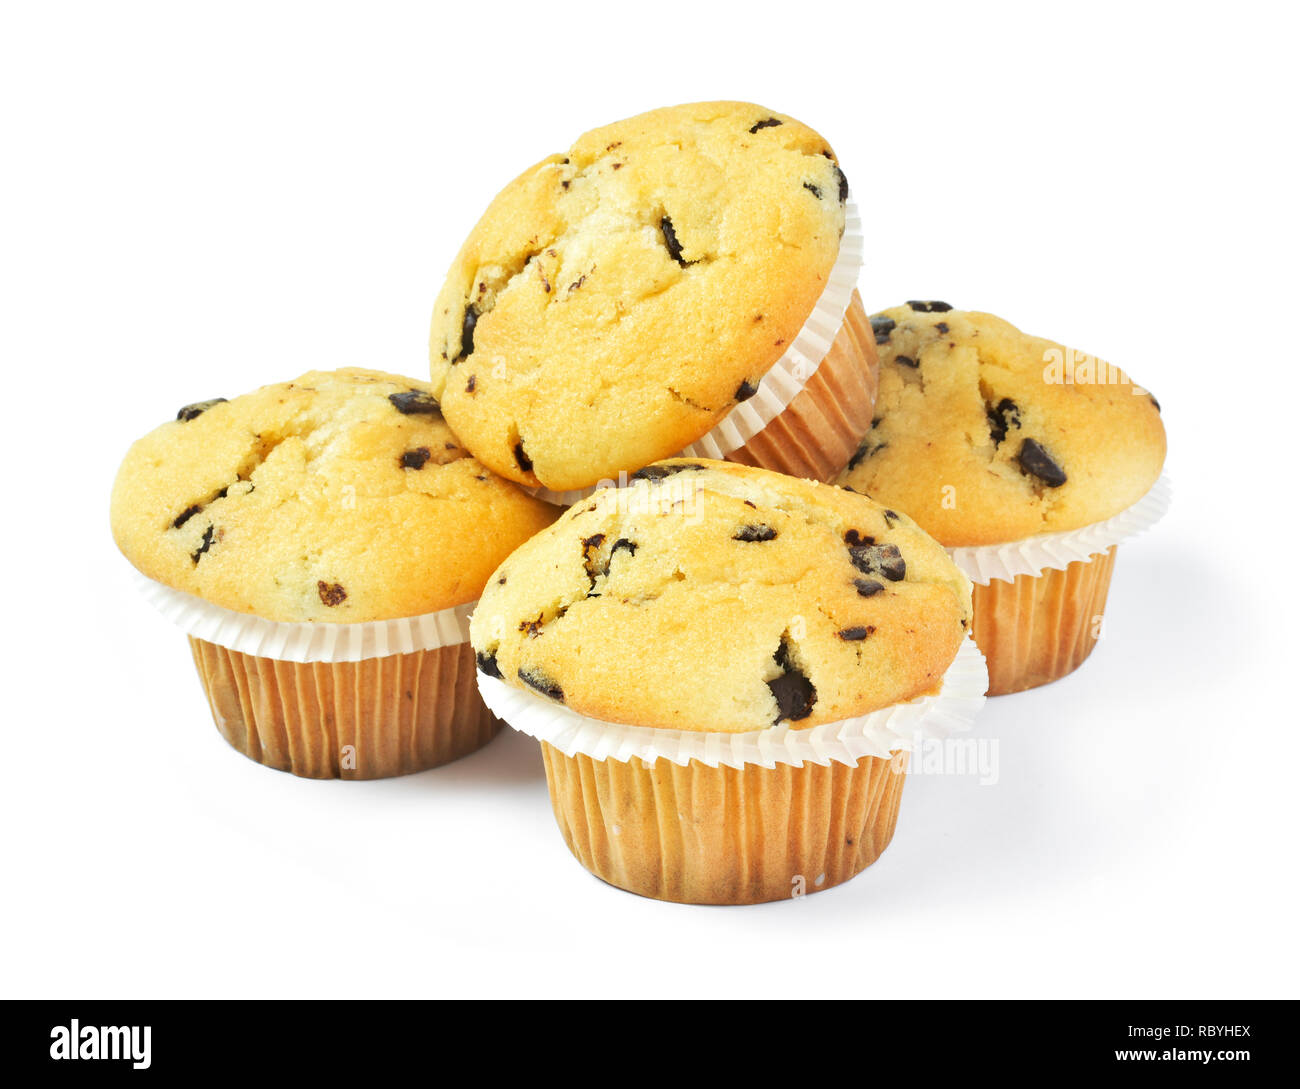 Leckere vanille Muffins mit Schokolade, auf weißem Hintergrund. Muffins mit Papier, süße Speisen oder das ungesunde Essen Thema. Stockfoto